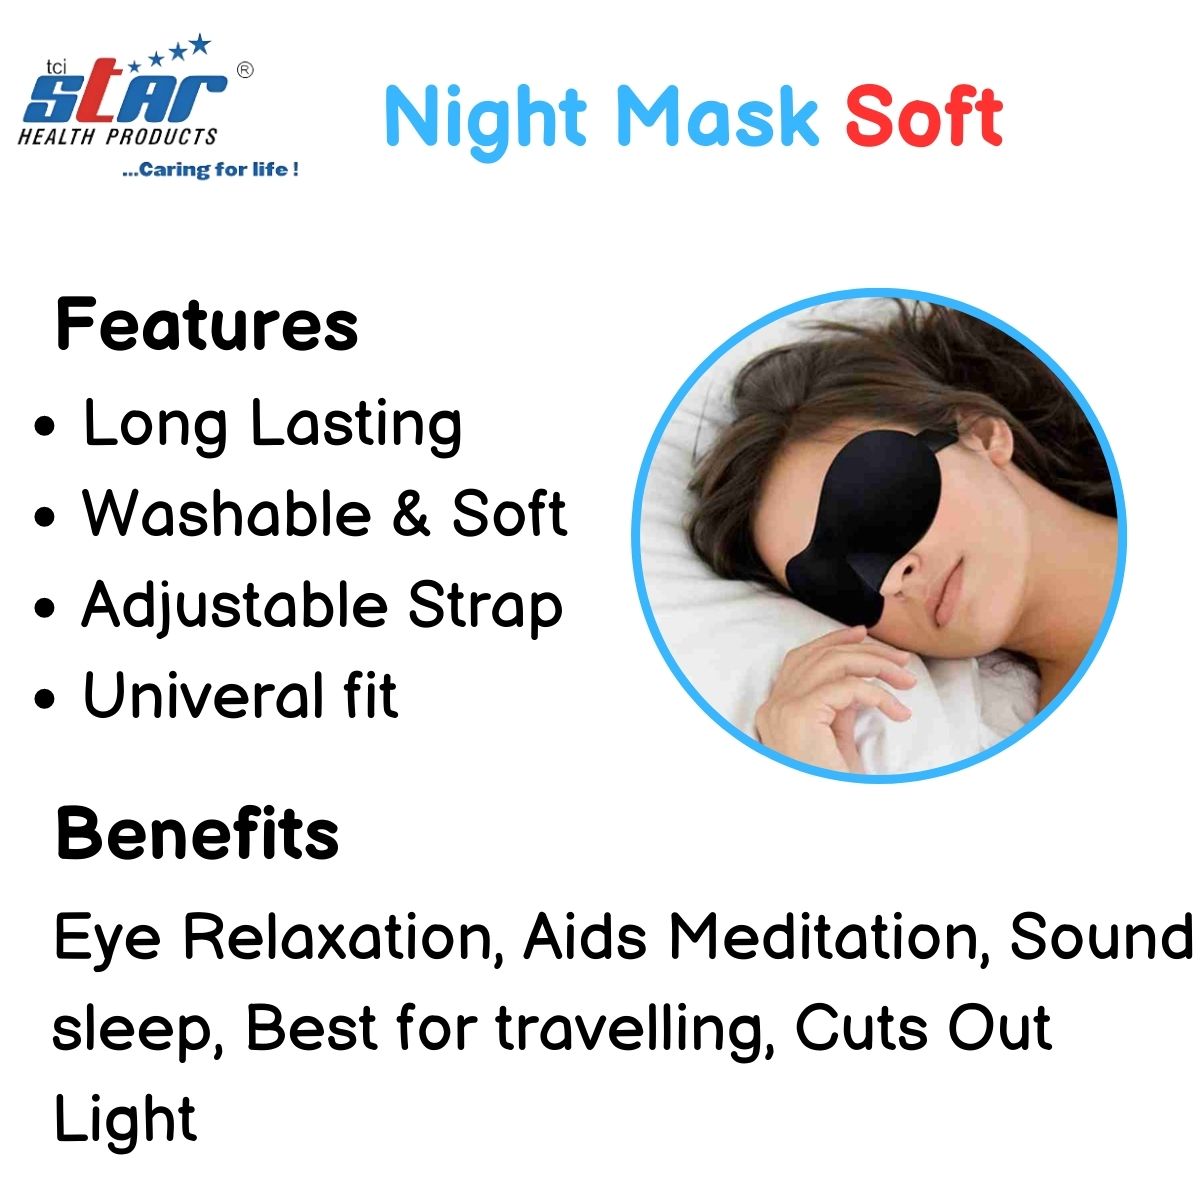 Night Mask Soft